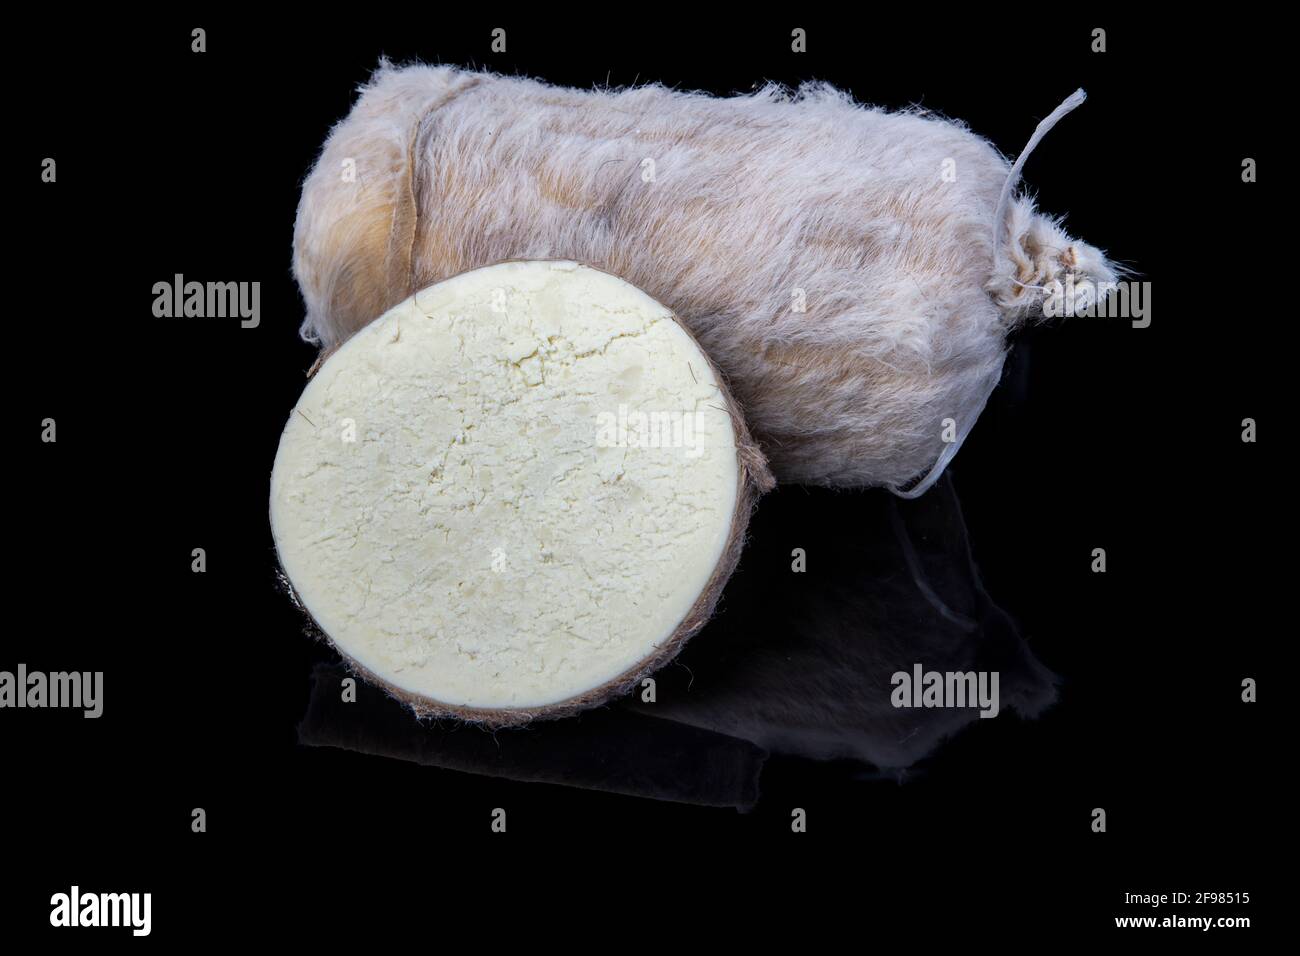 Tulum Cheese ist ein traditioneller türkischer Ziegenmilchkäse, der in  einem Ziegenfell-Mantel gereift ist und auf Türkisch tulum genannt wird.  Tulum-Käse in Scheiben (Türkisch: tulum pe Stockfotografie - Alamy